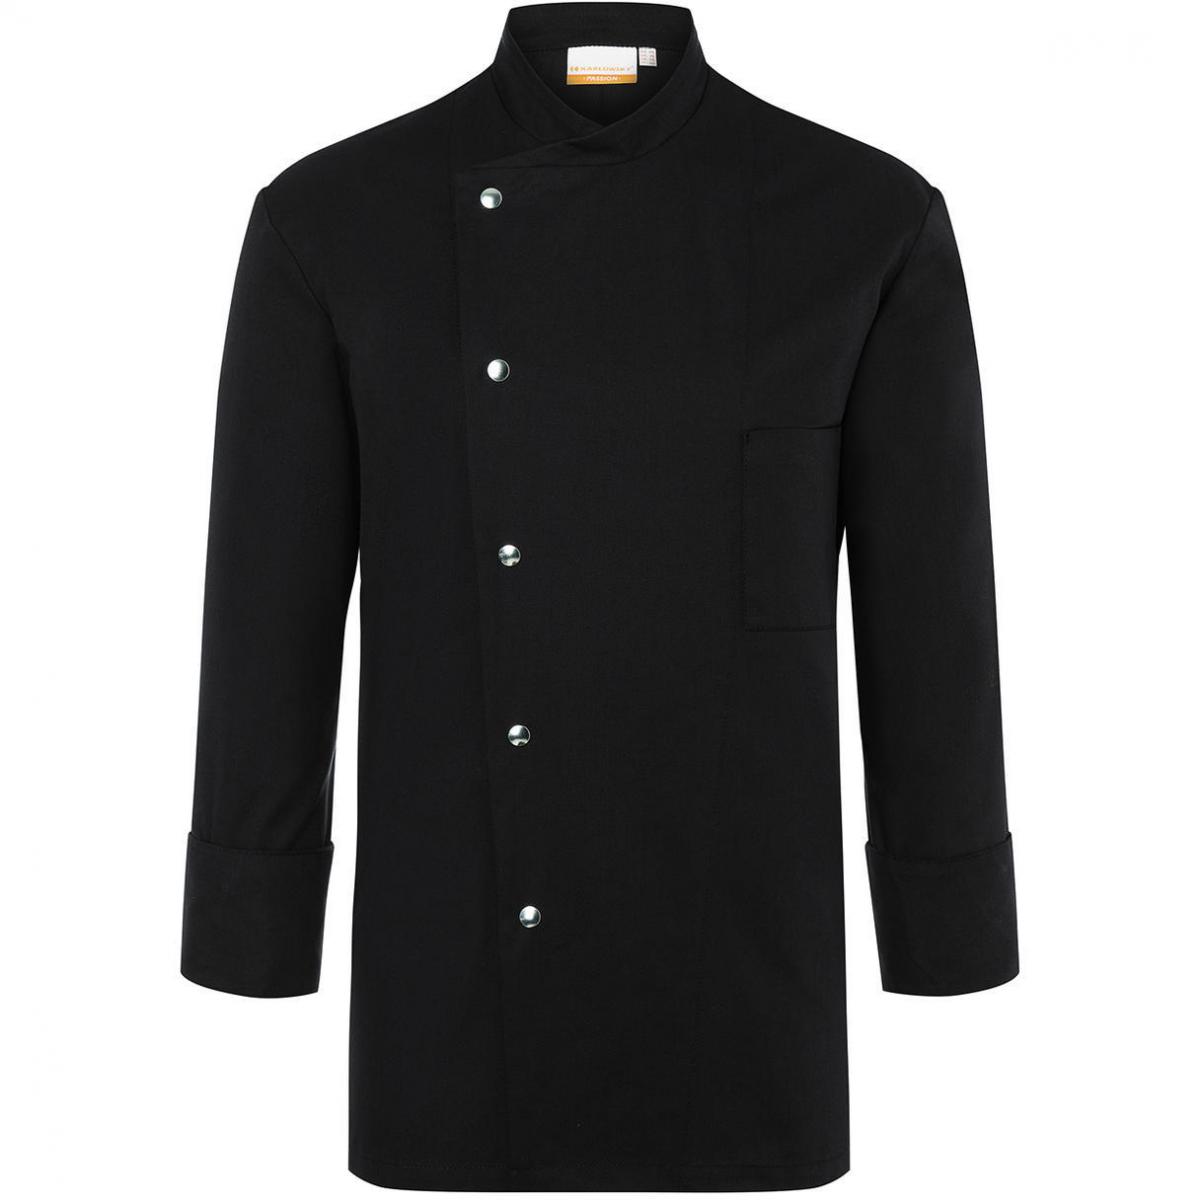 Hersteller: Karlowsky Herstellernummer: JM 14 Artikelbezeichnung: Chef Jacket Lars Long Sleeve Waschbar bis 95°C Farbe: Black